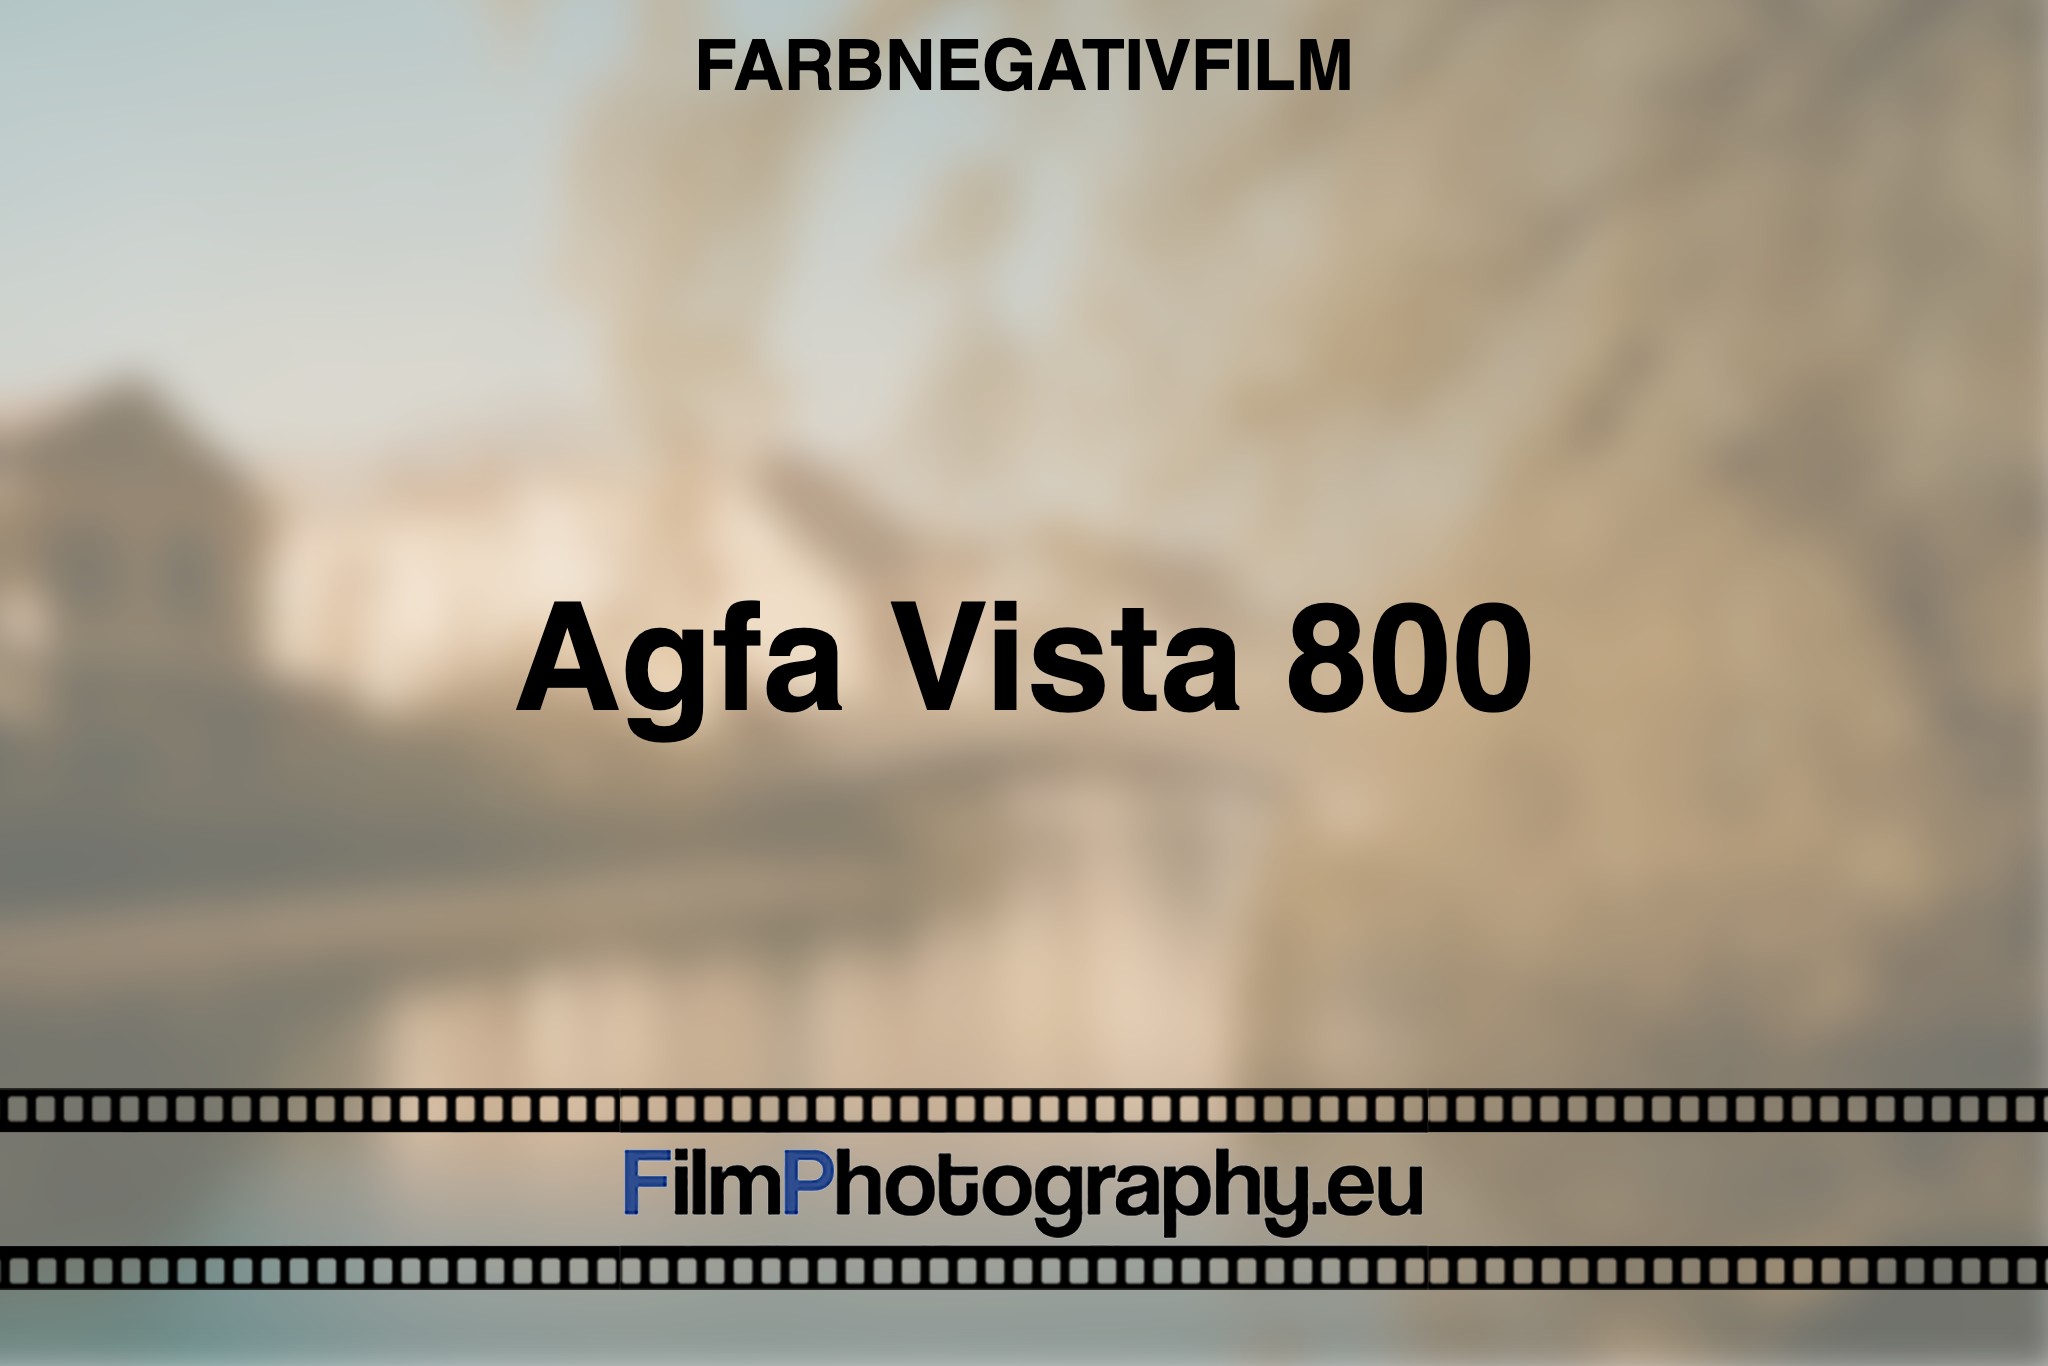 agfa-vista-800-farbnegativfilm-bnv